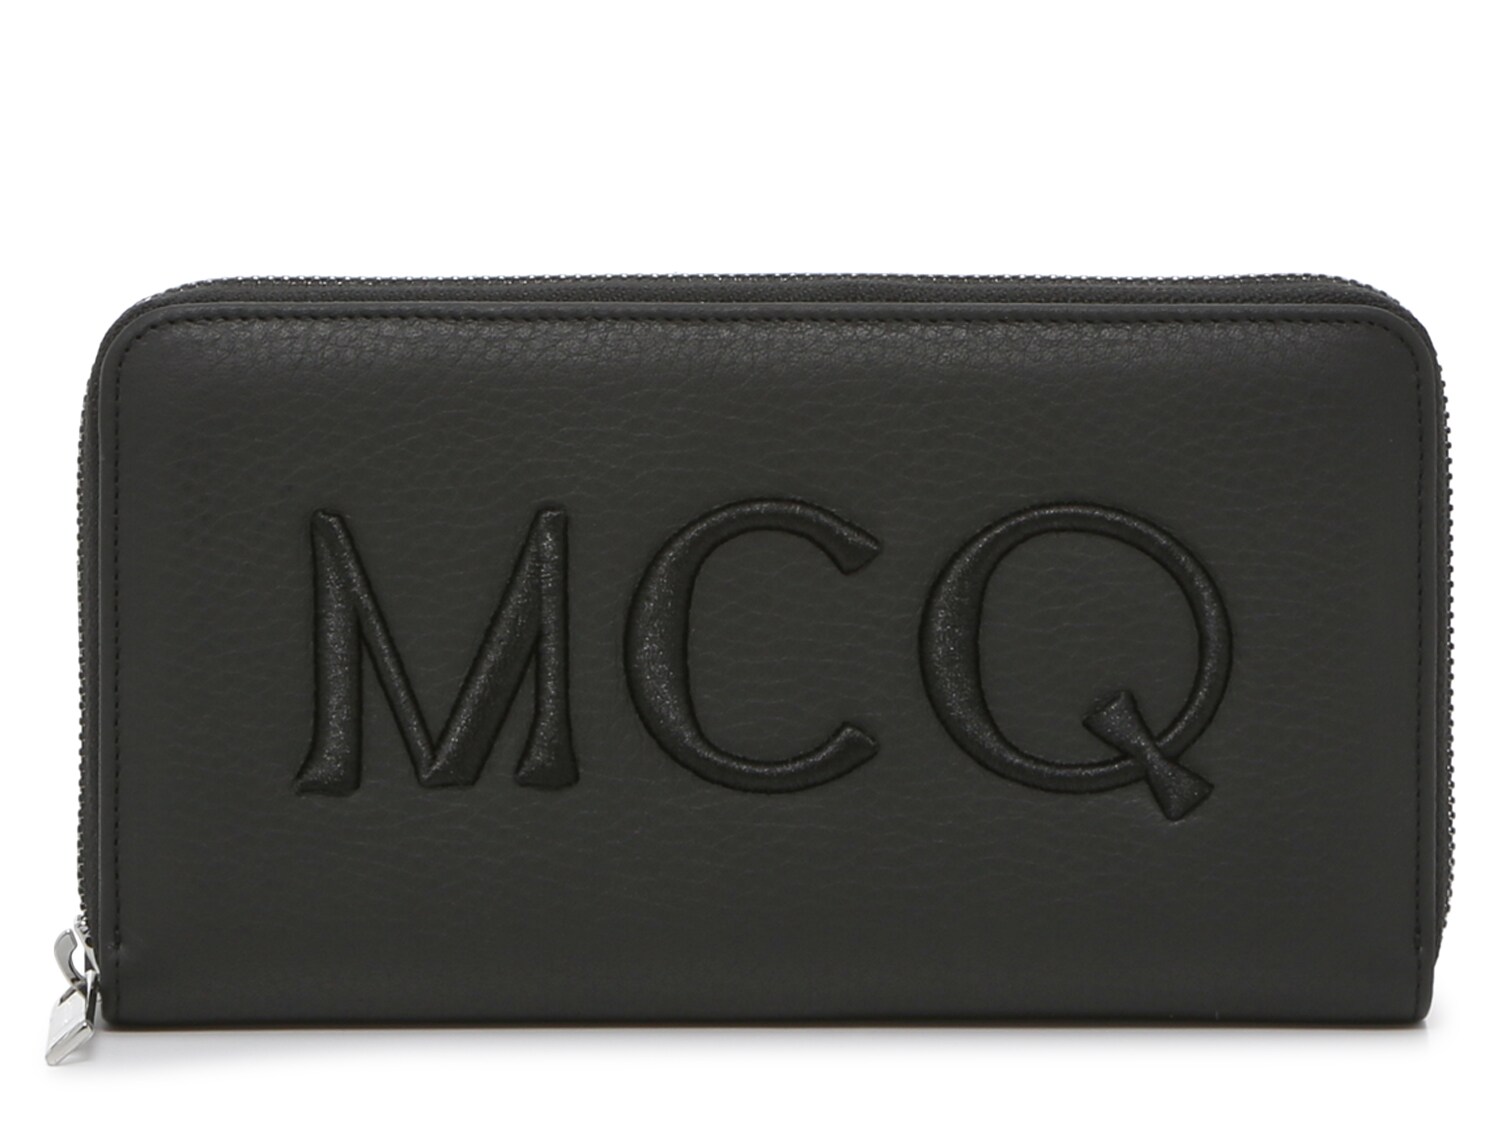 Кошелек Alexander McQueen с прошитым логотипом, черный